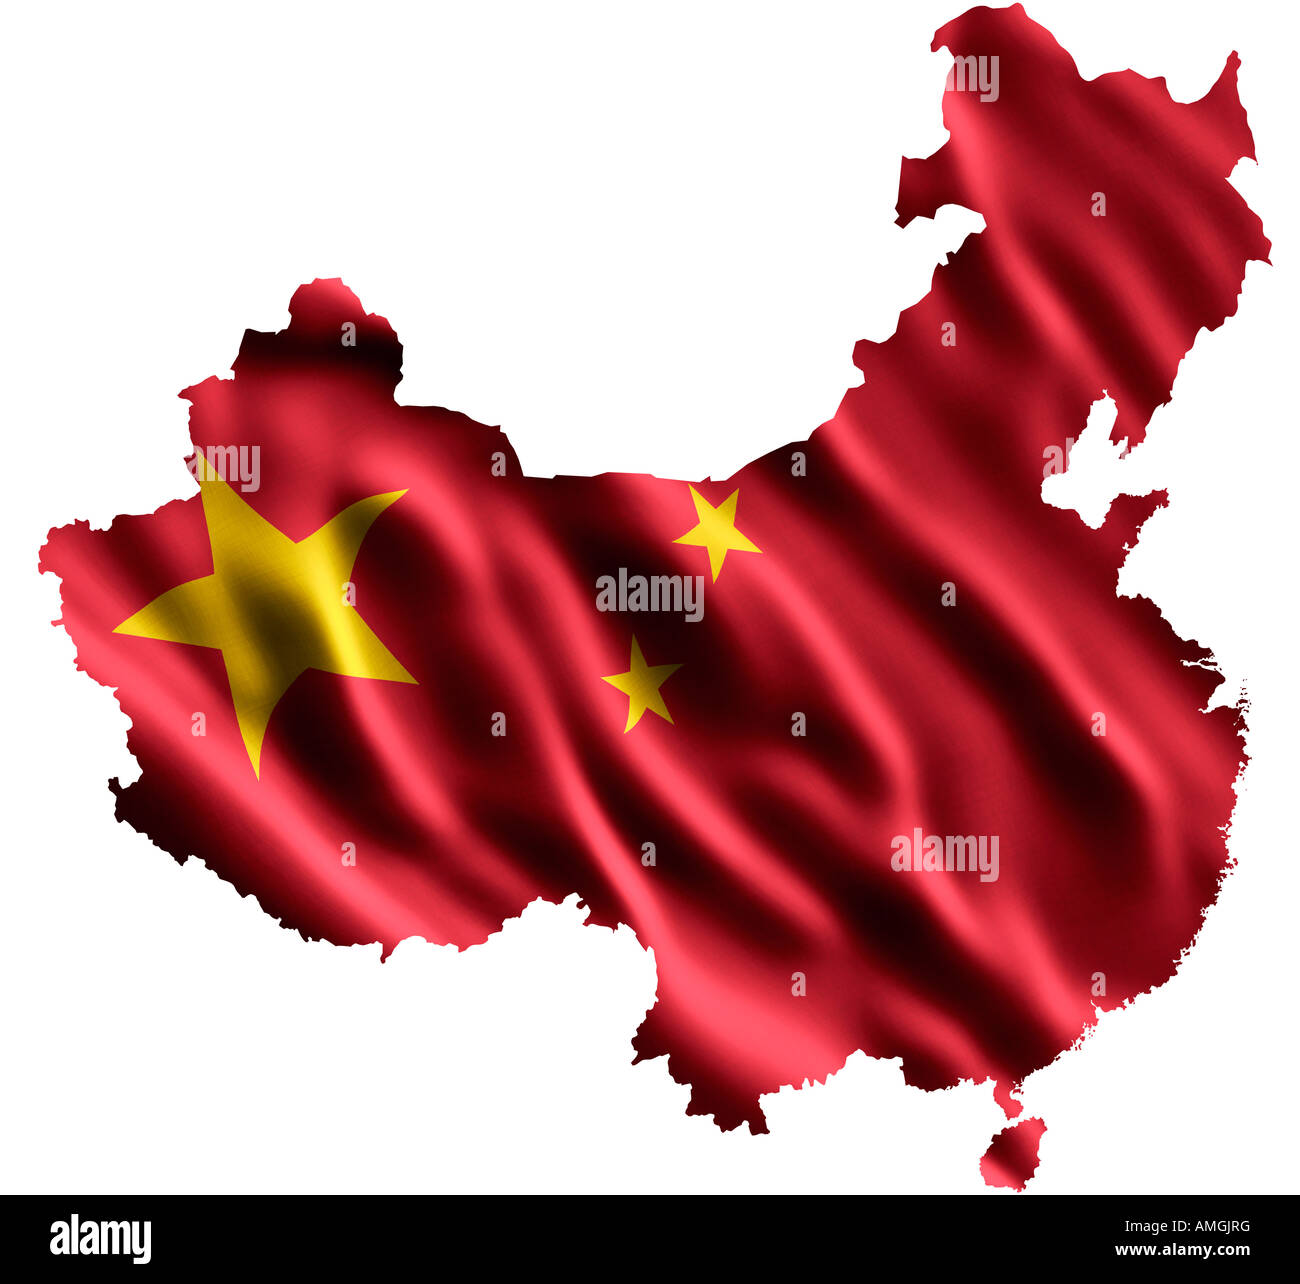 Drapeau national de la Chine comme une carte Banque D'Images